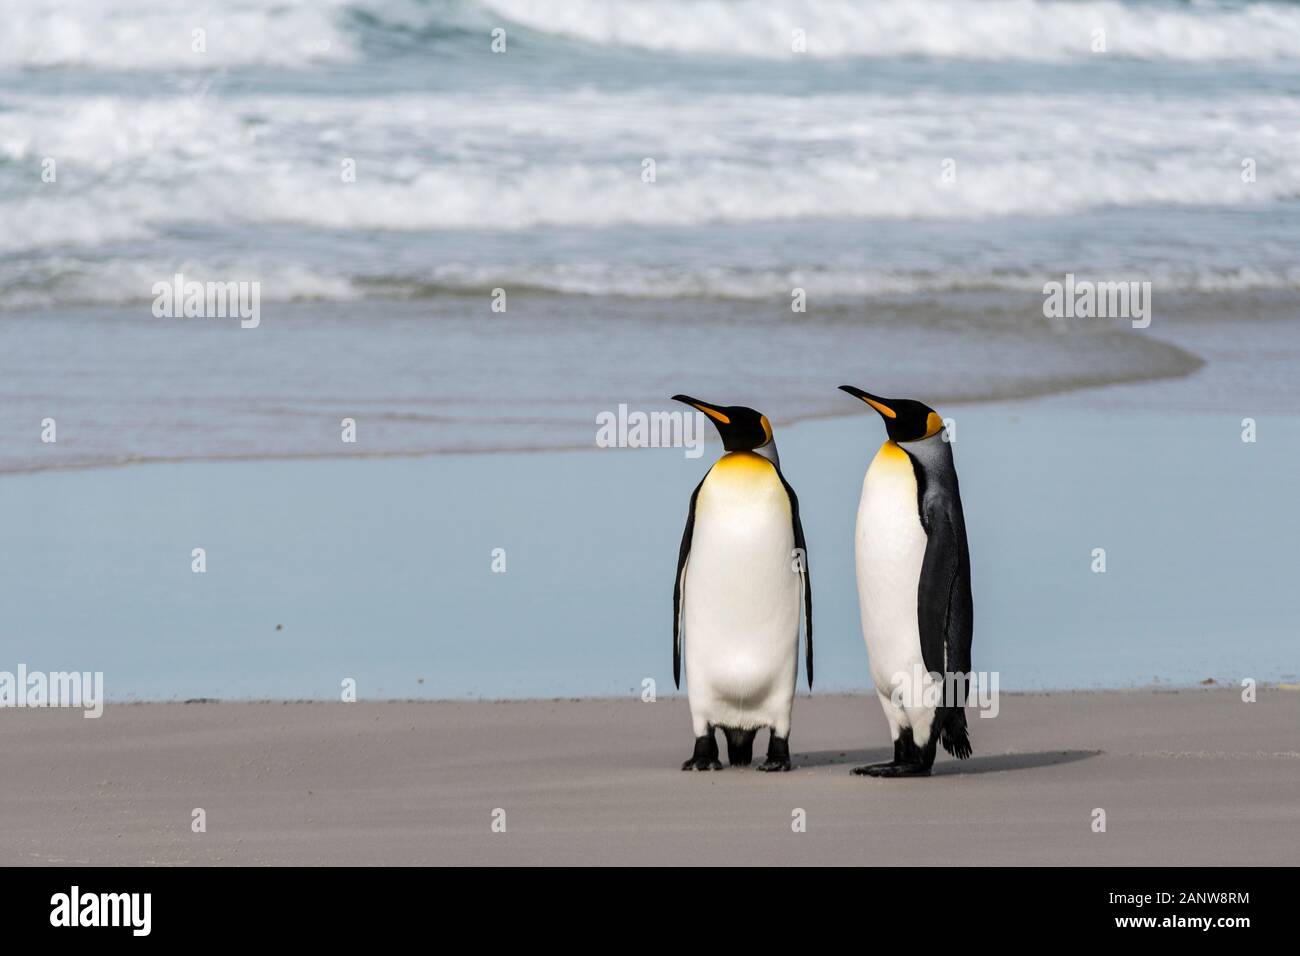 Coppia di Re dei pinguini, Aptenodytes patagonicus, sulla spiaggia in corrispondenza del collo, Saunders Island, Isole Falkland, British Overseas Territorio Foto Stock